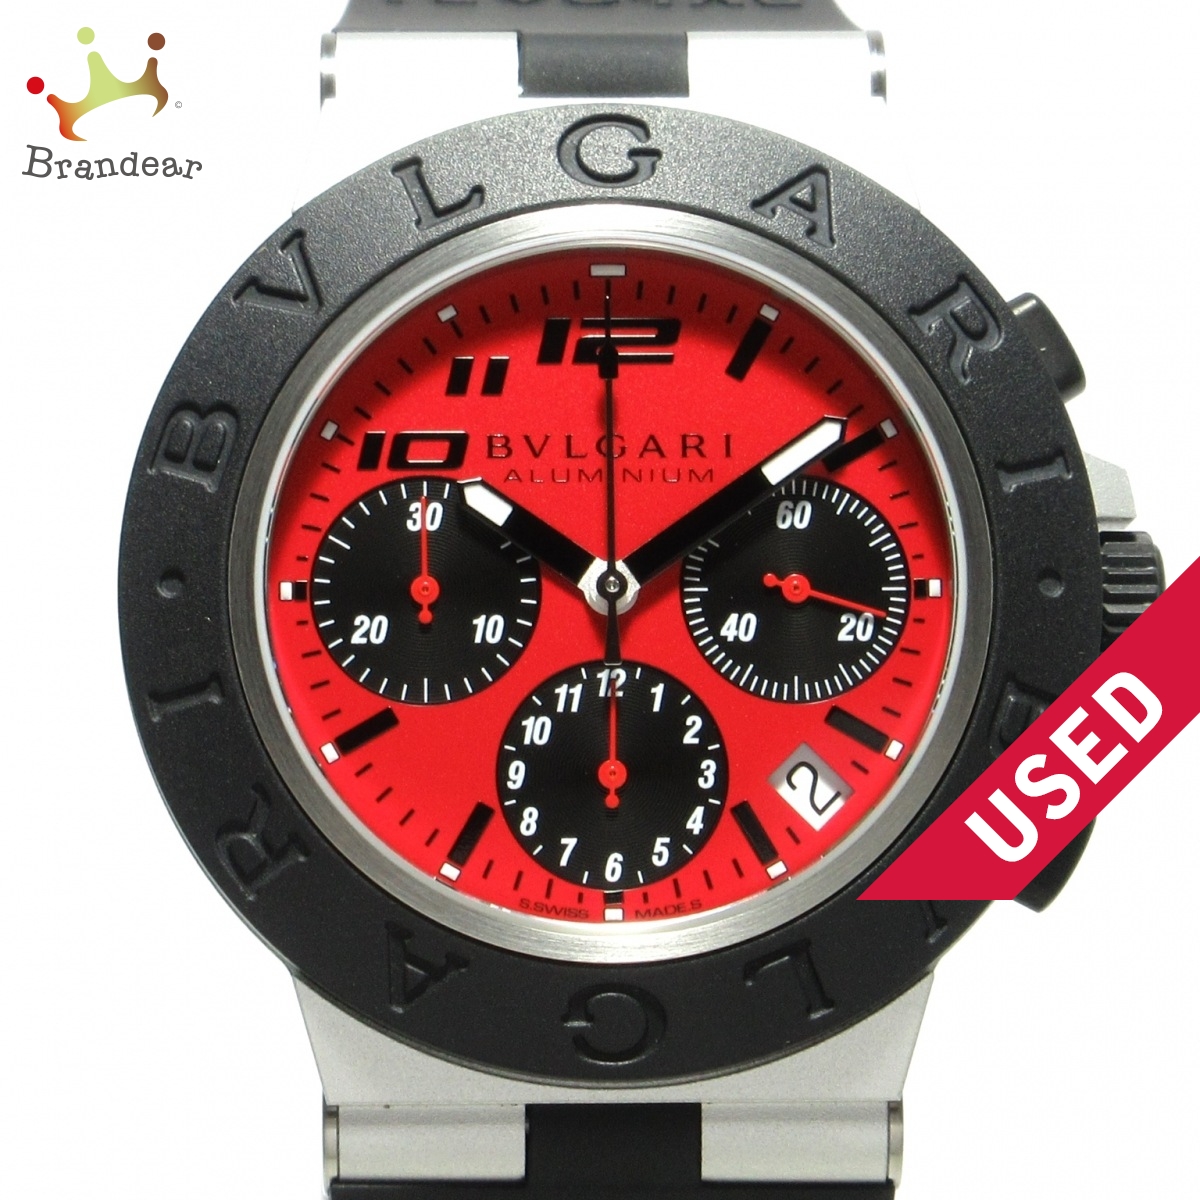 日本未発売 BVLGARI(ブルガリ) アルミニウム 腕時計 クロノグラフ